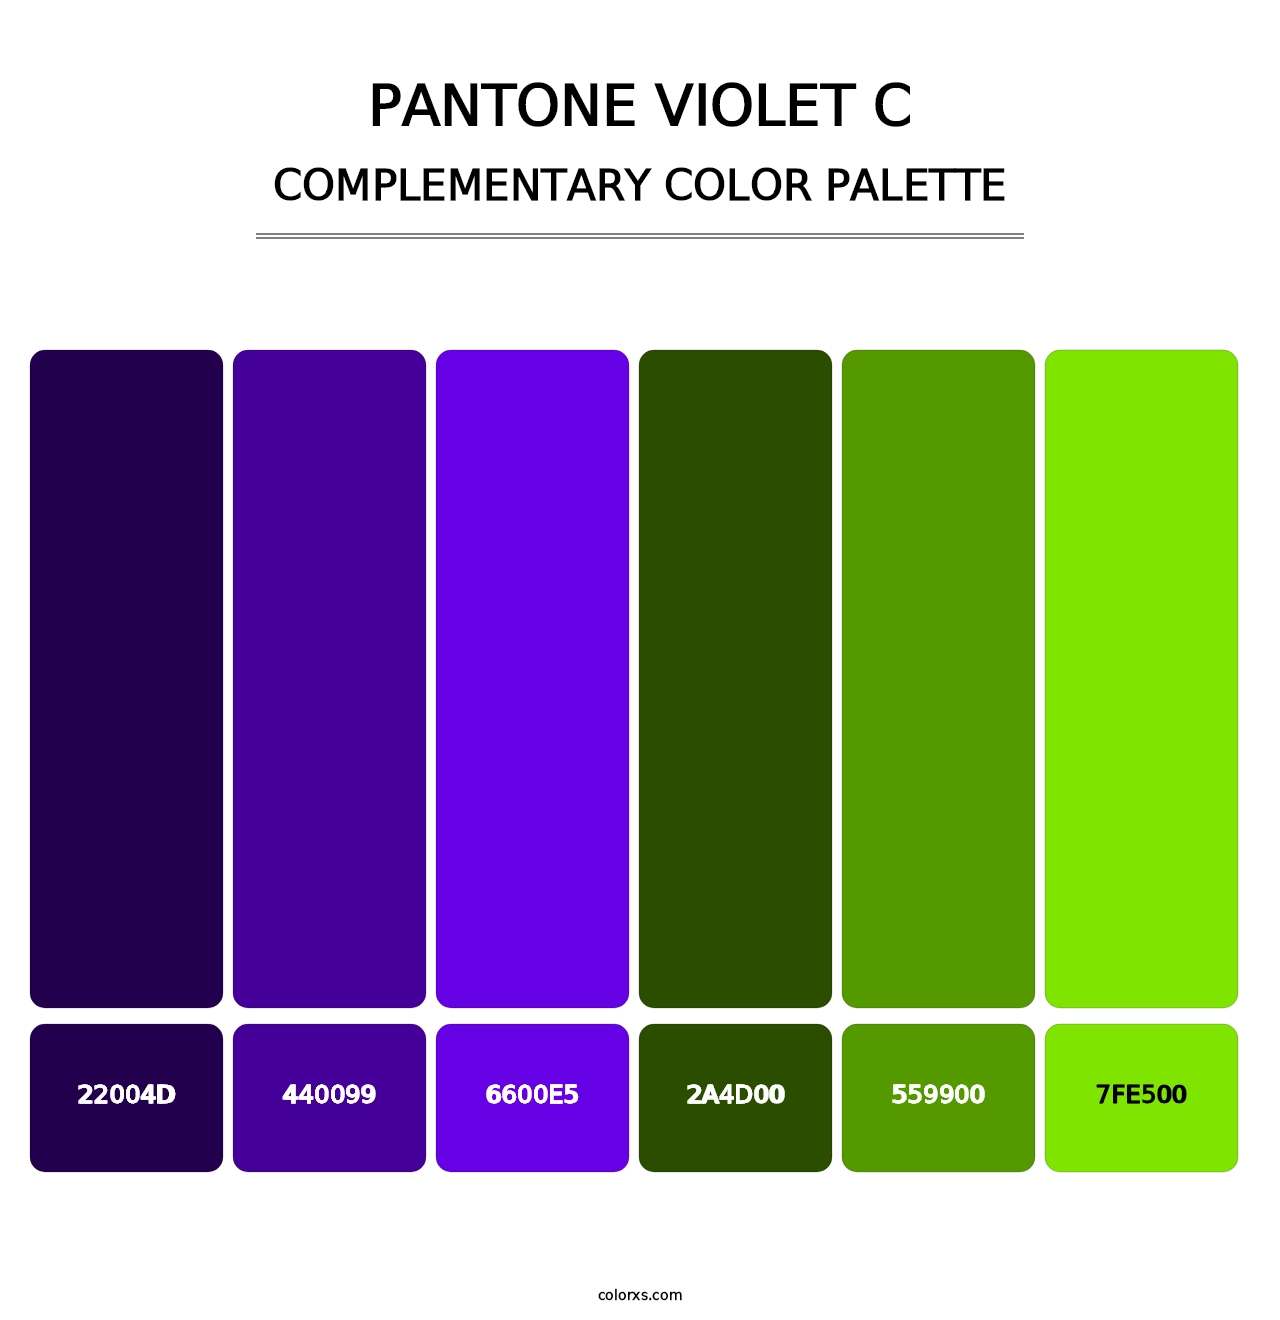 PANTONE Violet C - Complementary Color Palette